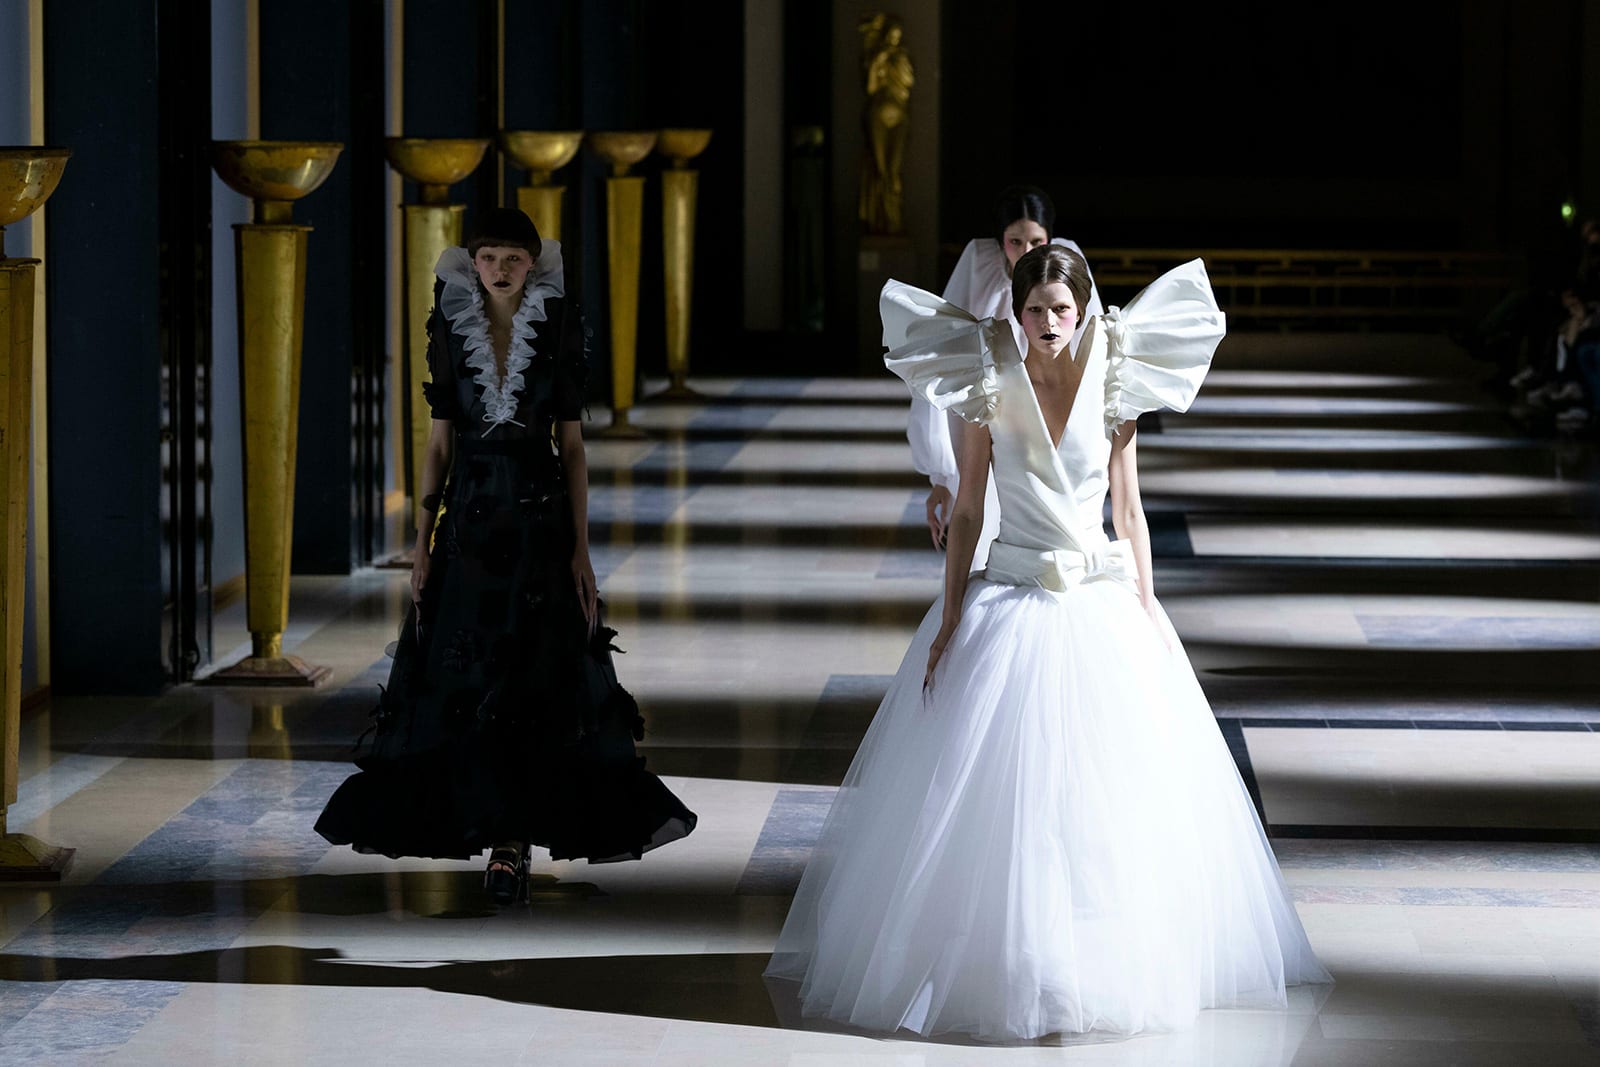 بعيدًا عن الفستان الأبيض التقليدي.. ما هي أحدث صيحة لأزياء الزفاف في عام 2022؟